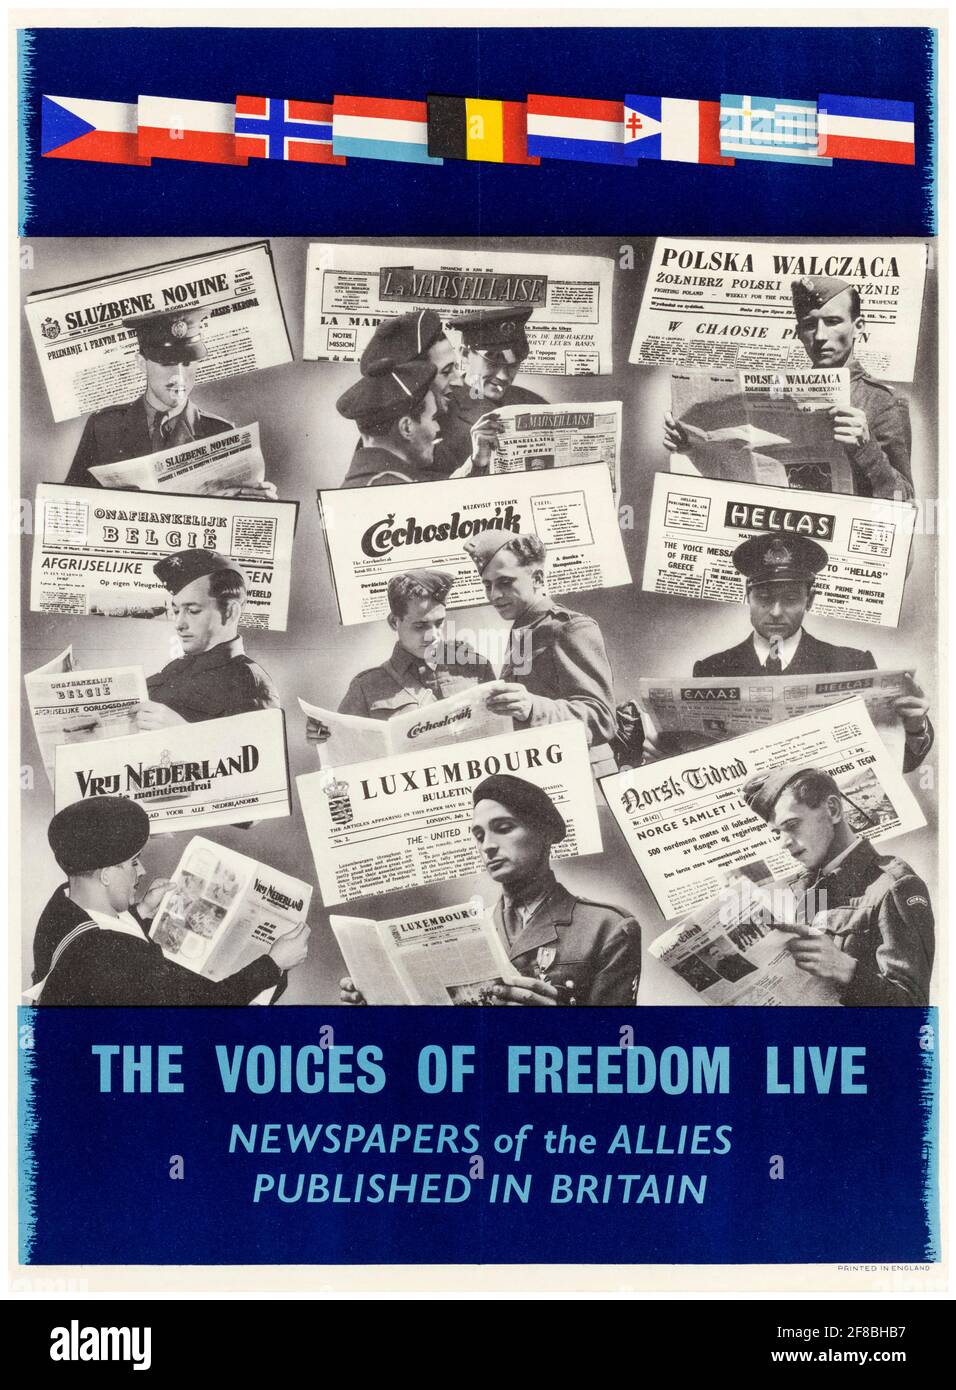 Britisch, 2. Weltkrieg, Voices of Freedom live: Zeitungen der Alliierten, veröffentlicht in Großbritannien, Motivationsposter, 1942-1945 Stockfoto